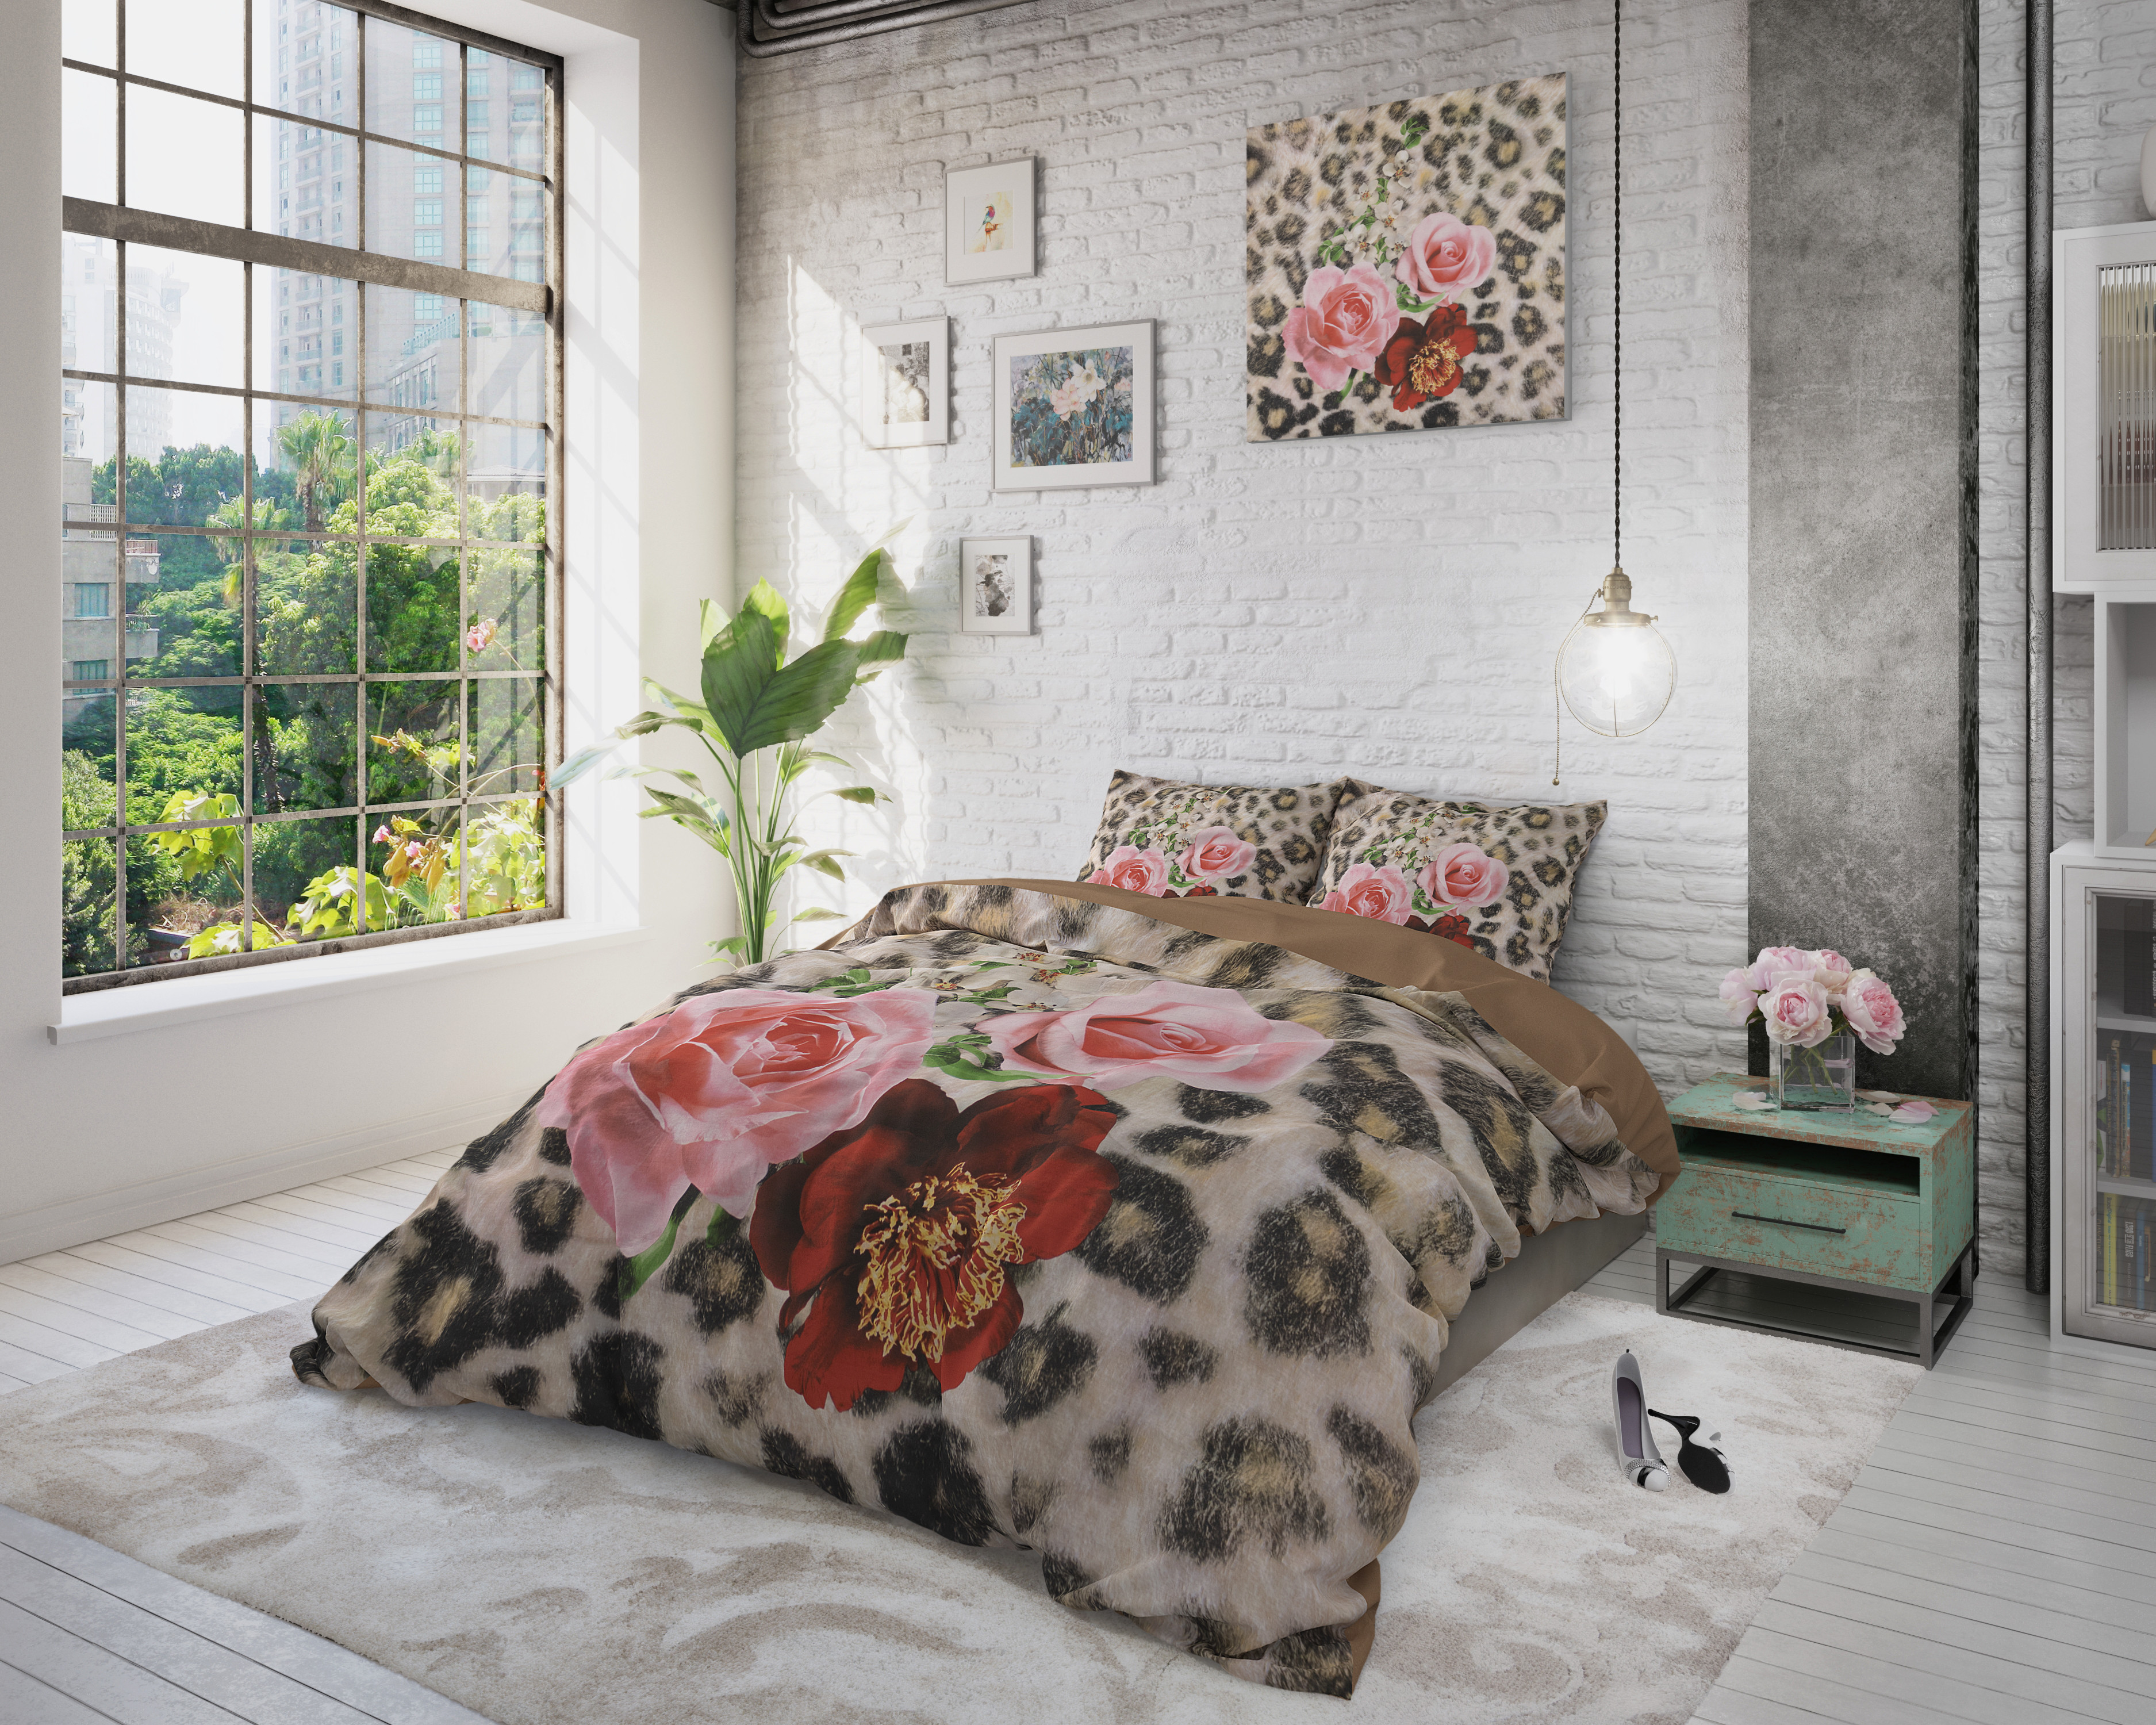 Комплект постельного белья принтом пантеры с цветами Dreamhouse, 200 x 220 см